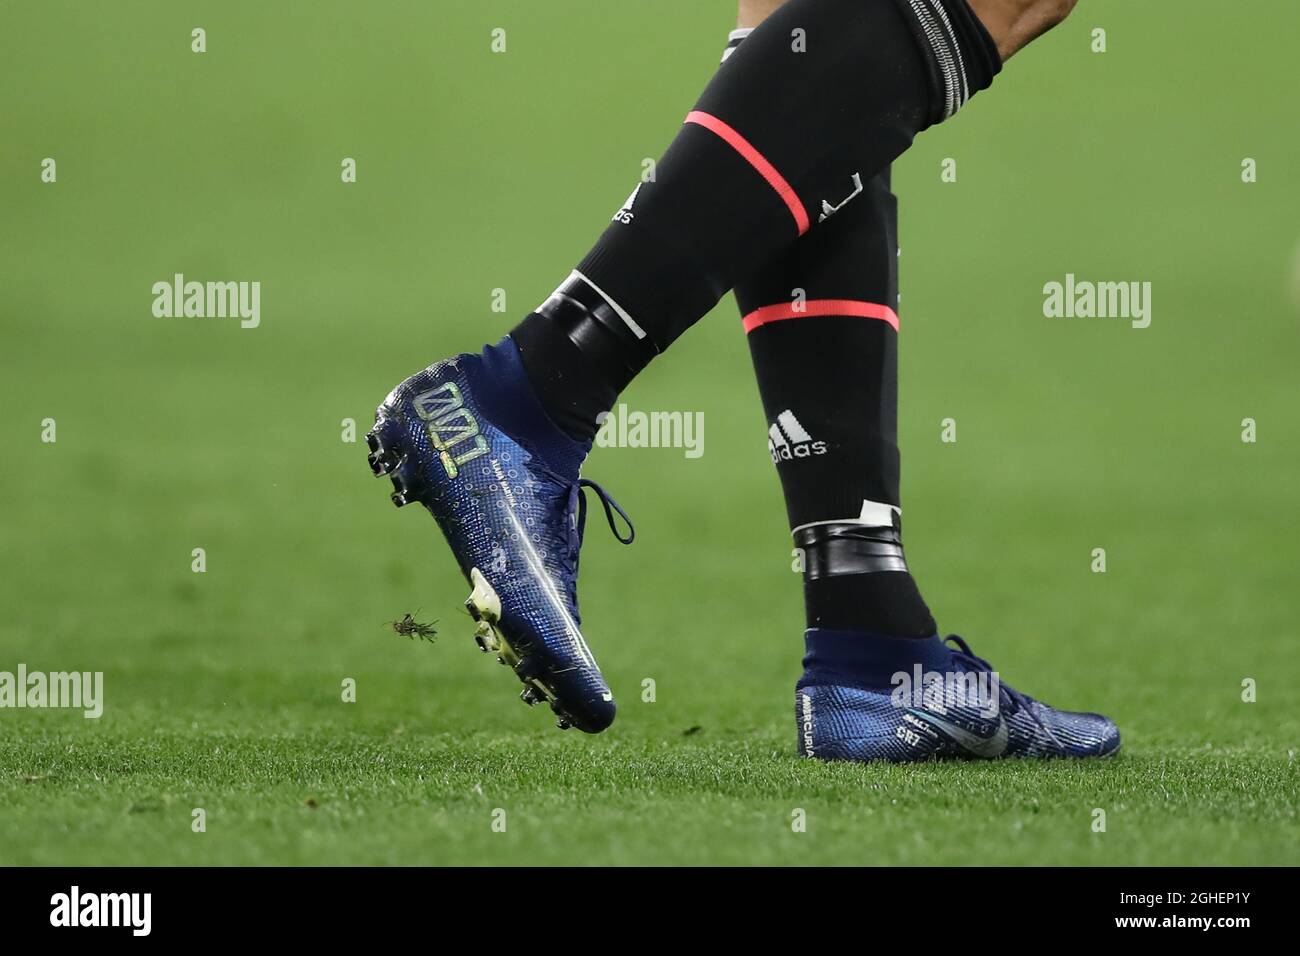 Cristiano Ronaldo de Juventus modela una nueva versión las botas de fútbol Nike Mercurial durante el partido de la UEFA Champions League en el Juventus Stadium de Turín. Fecha de la